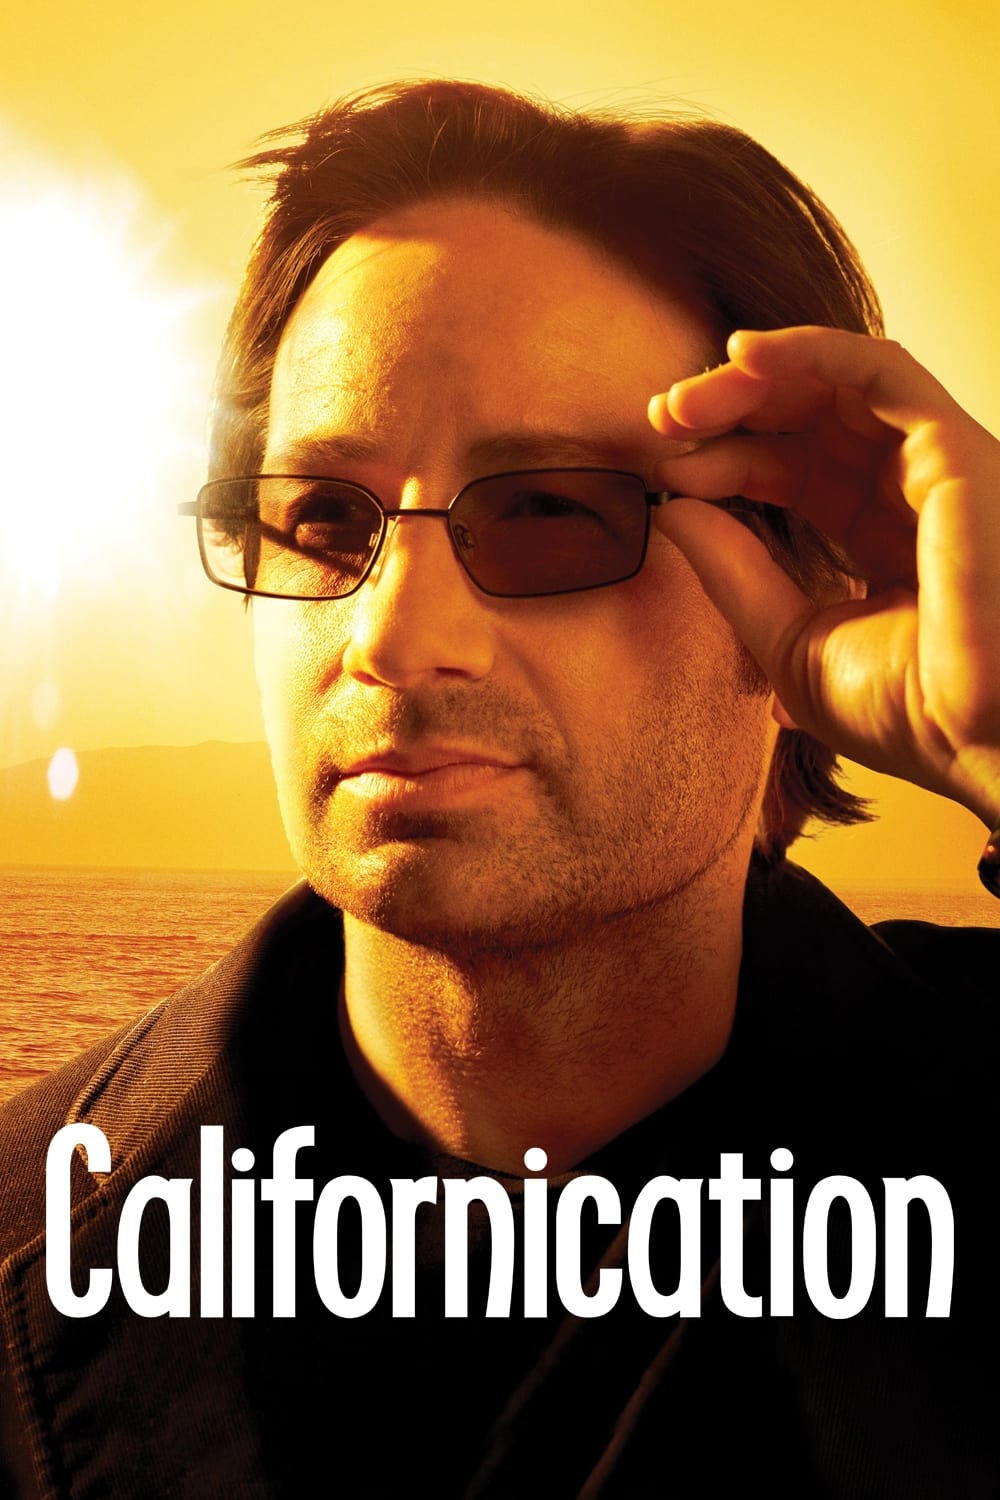 Plakát pro film “Californication”